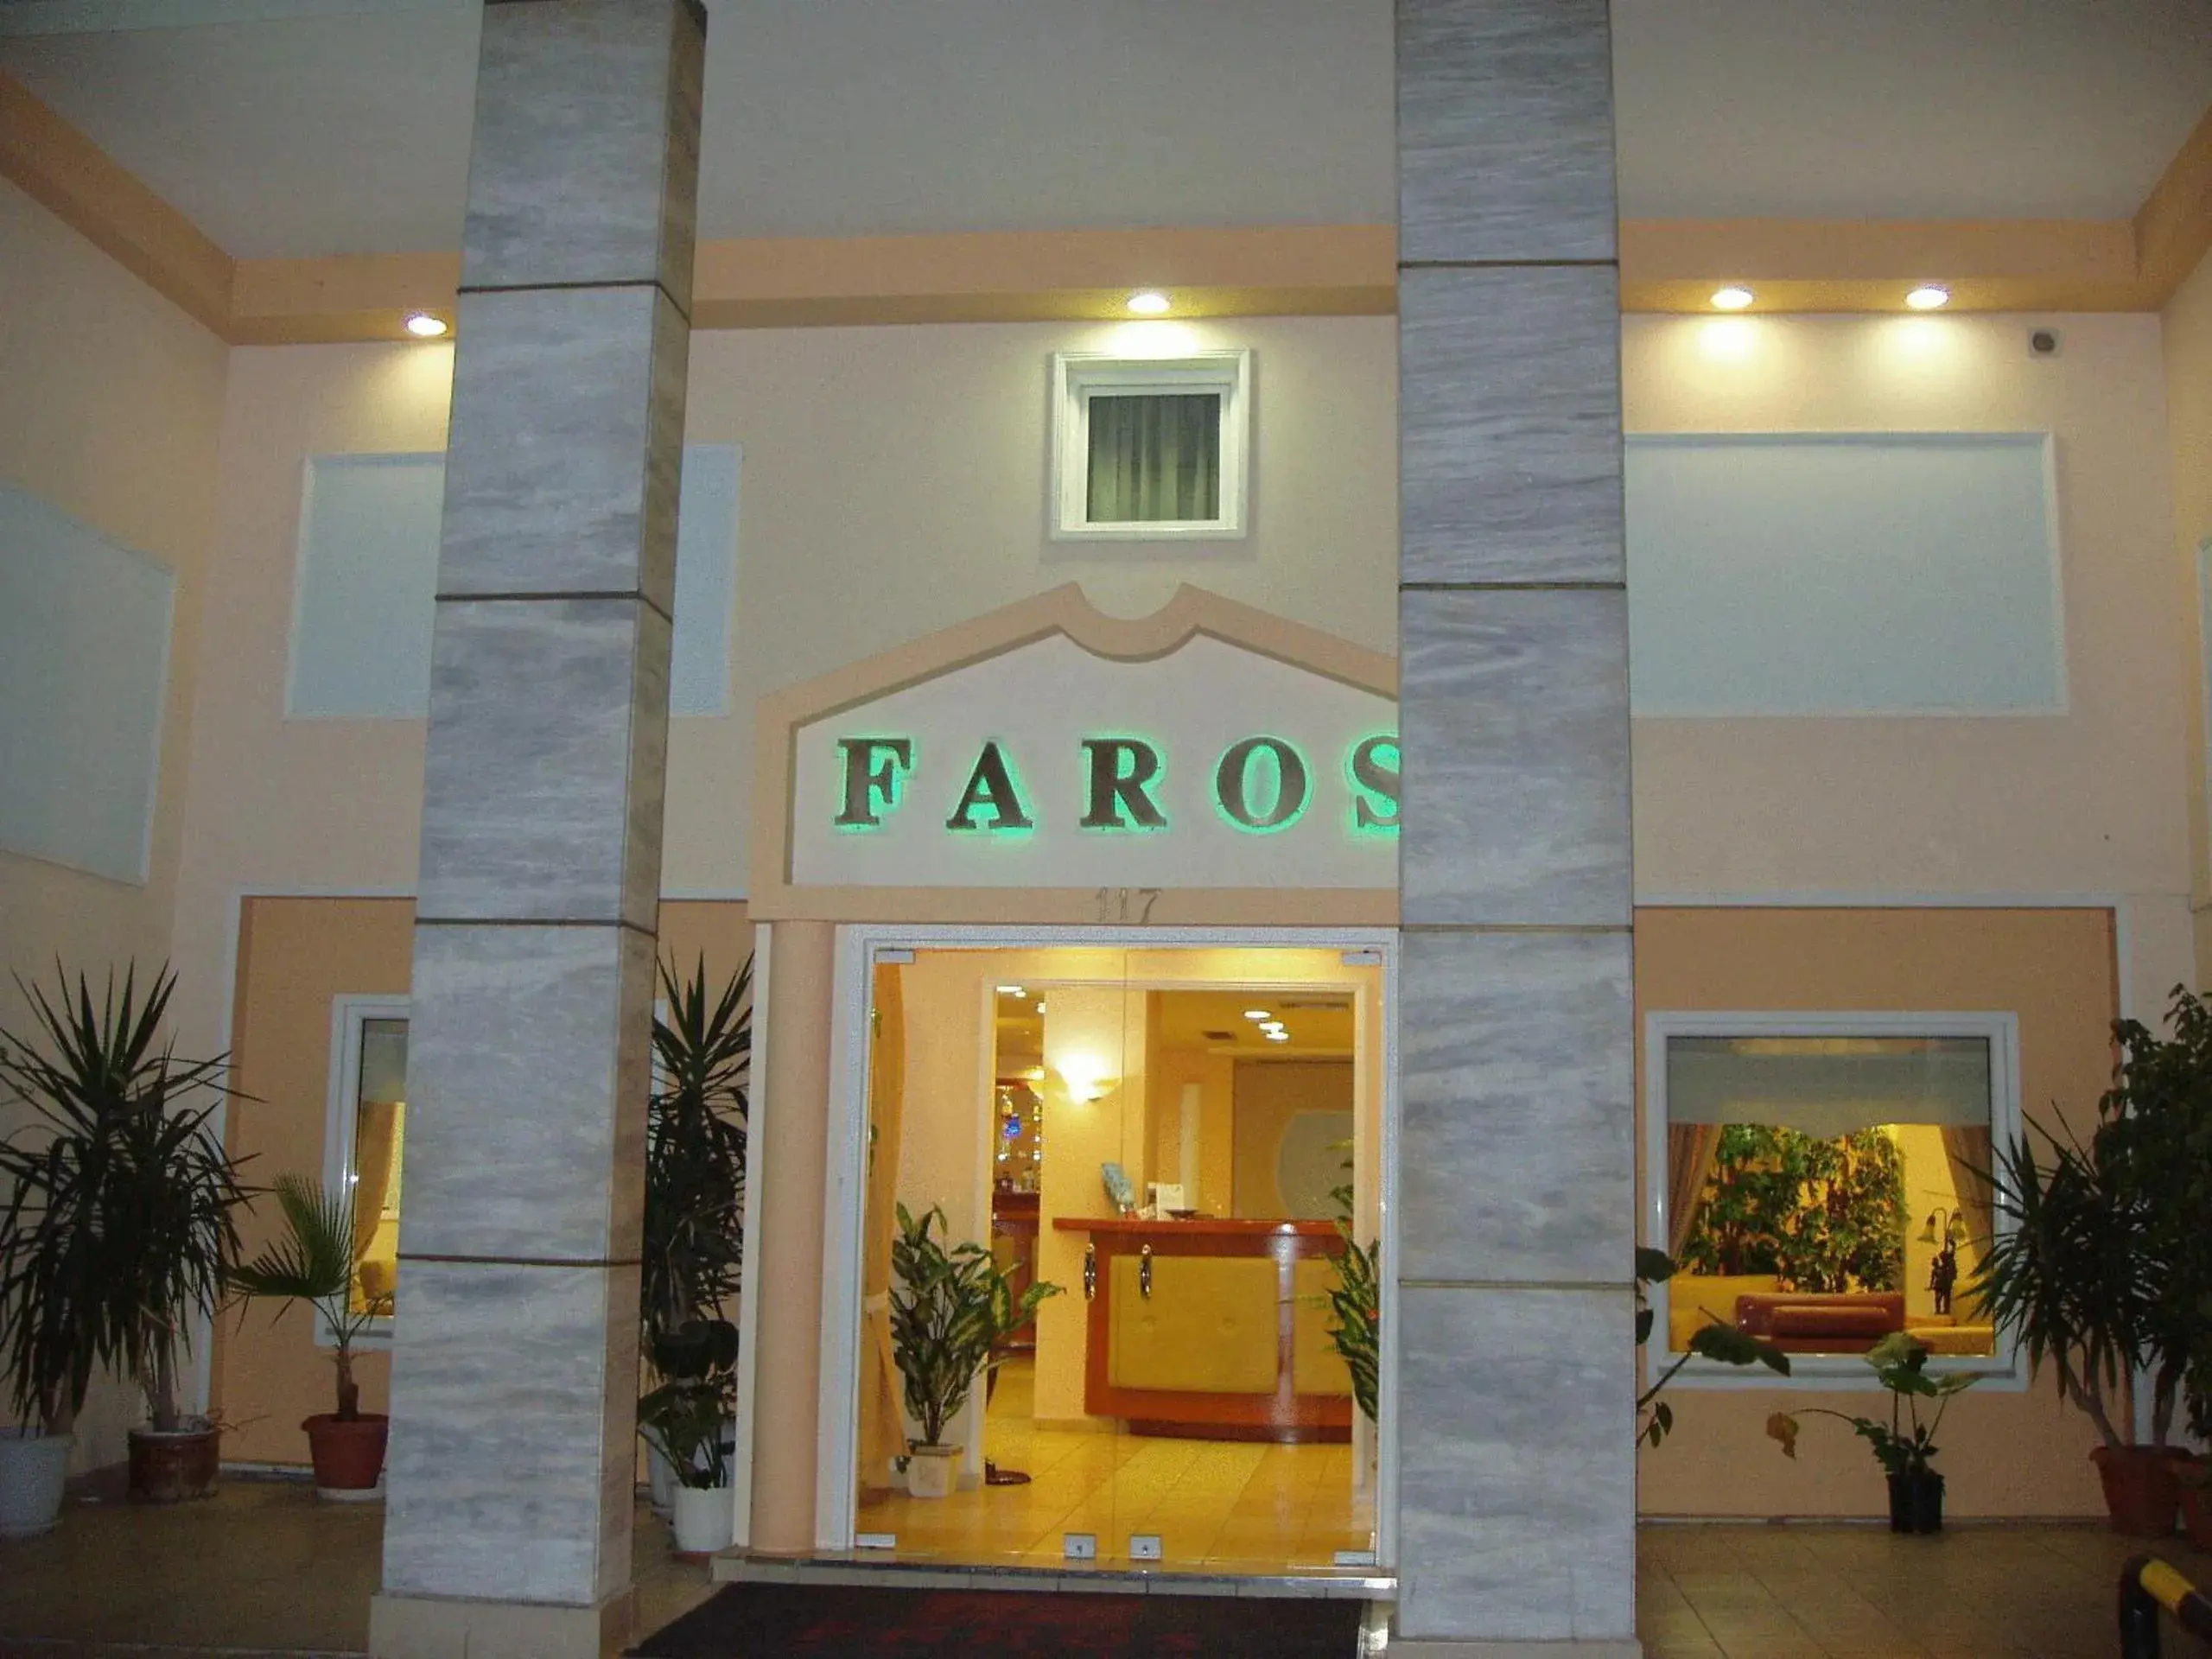 Facade/entrance in Faros II